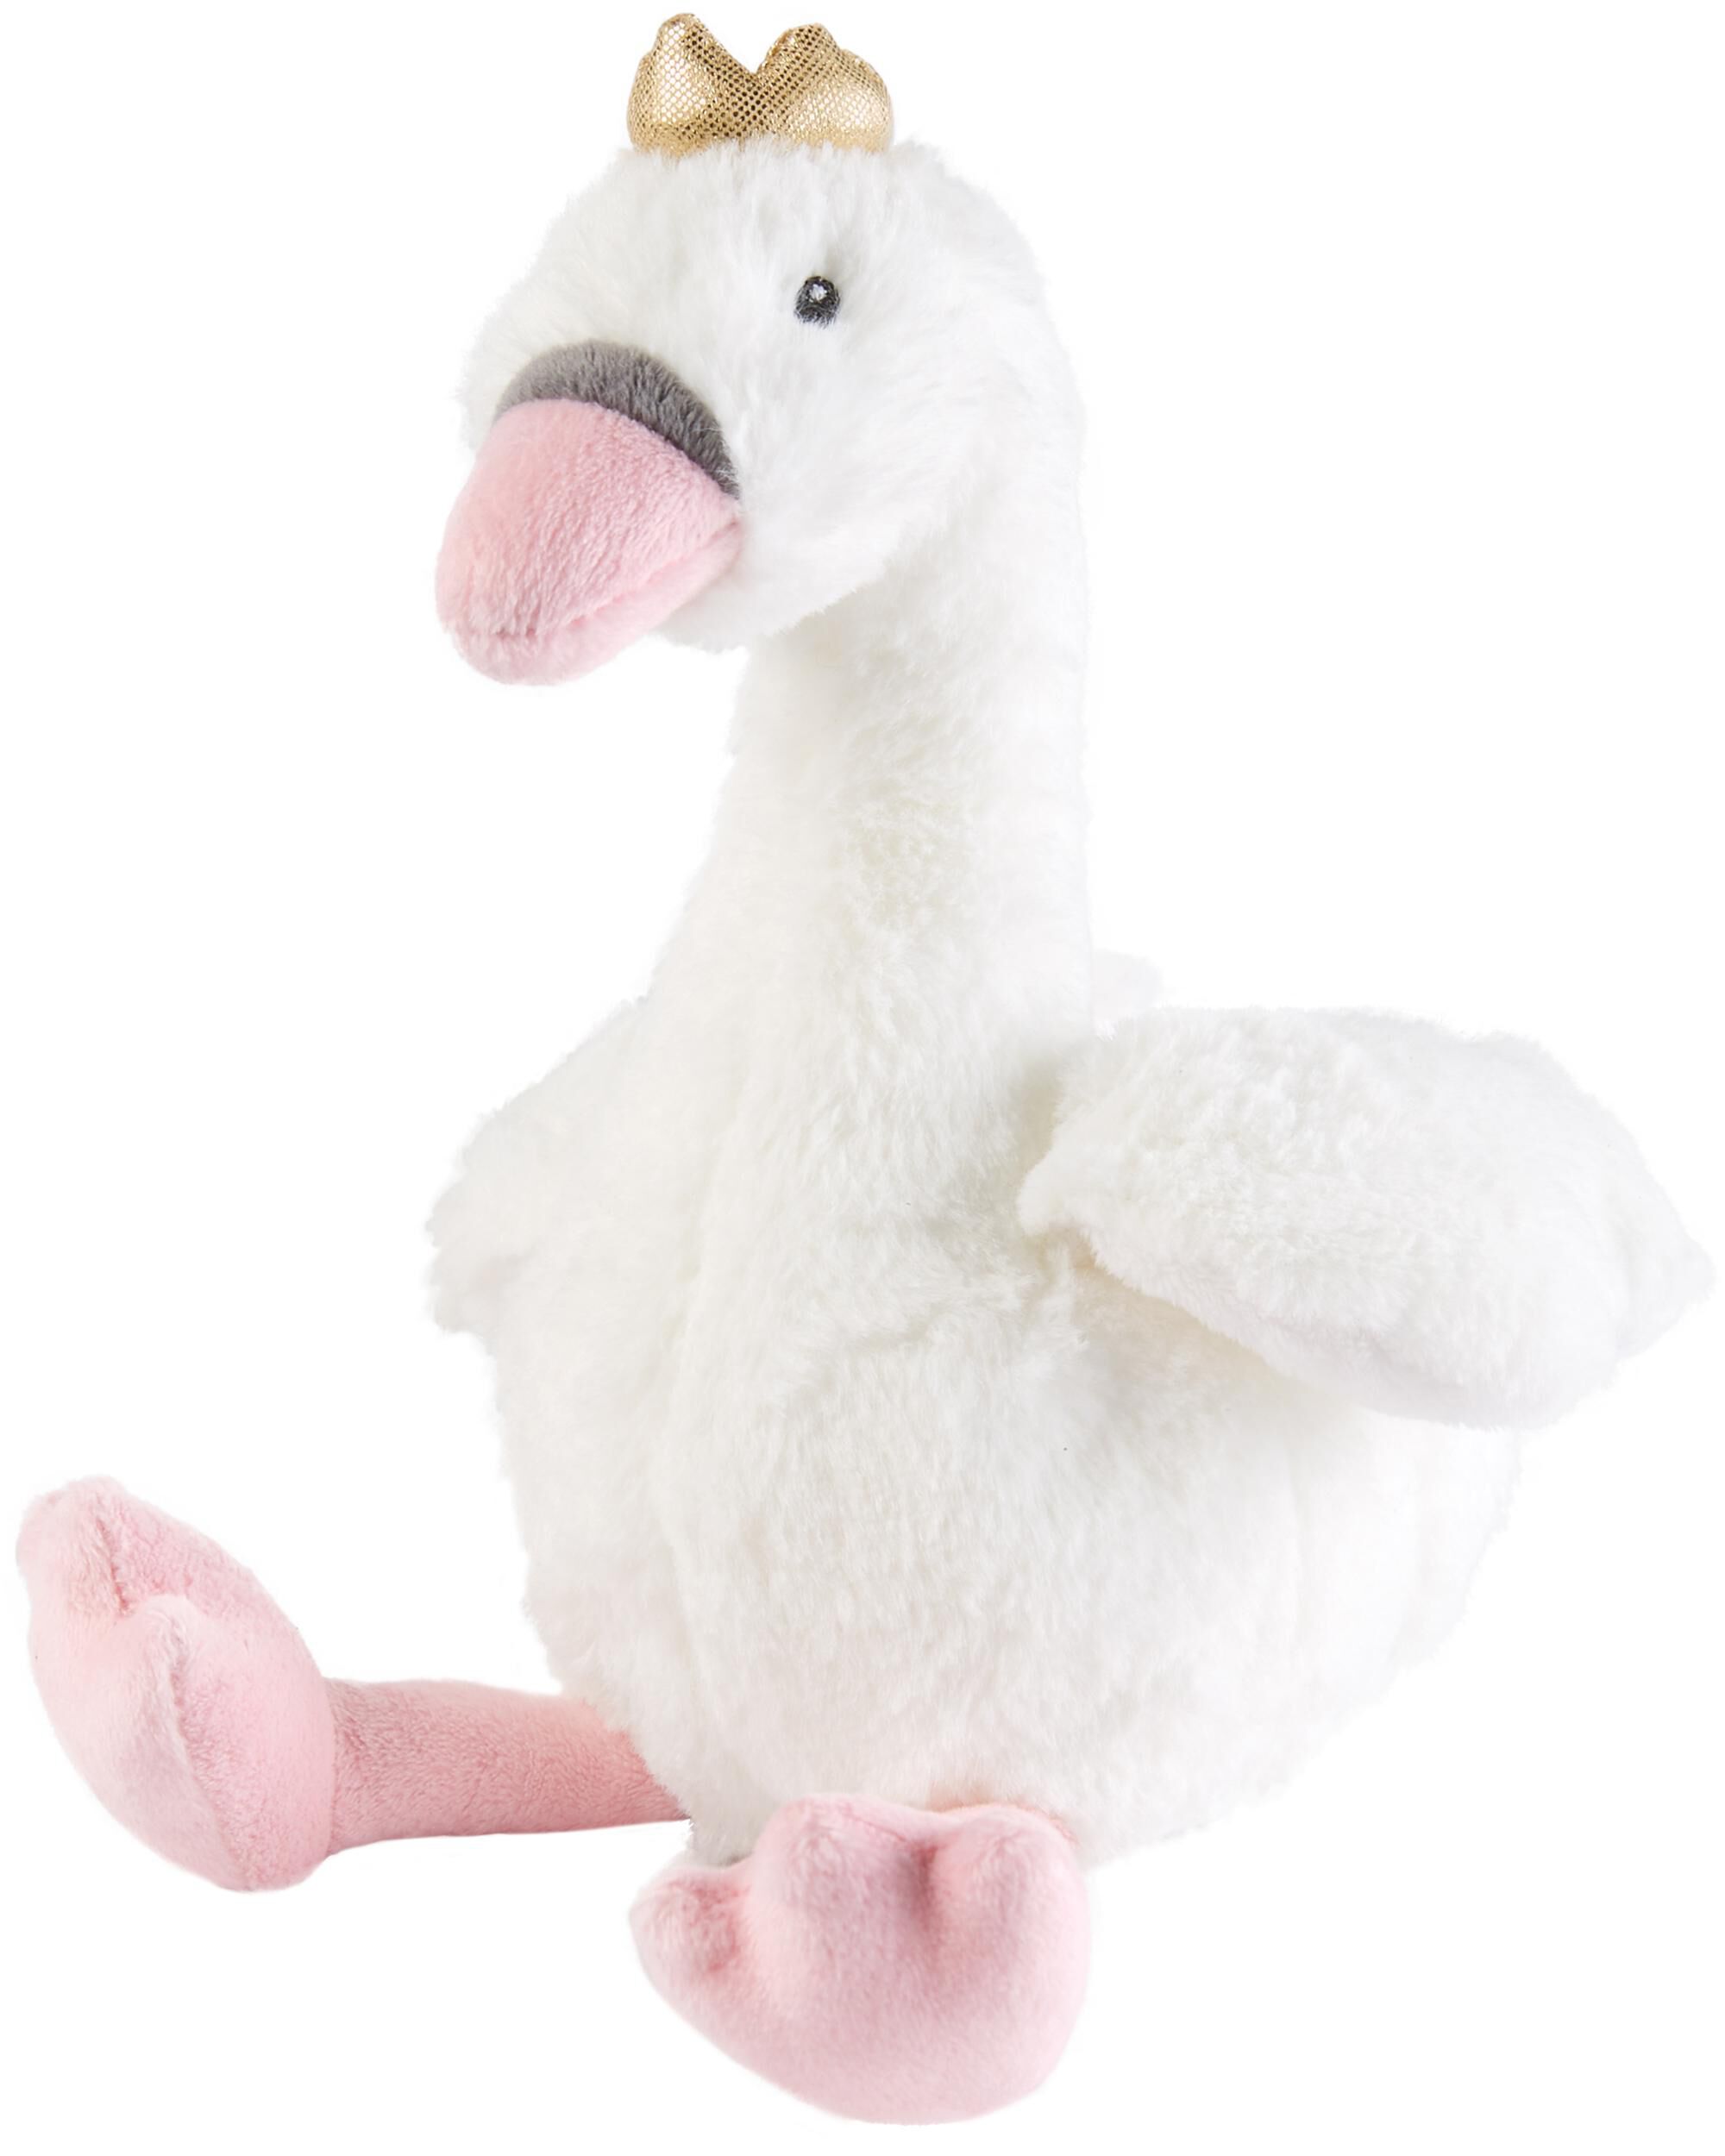 swan stuffed animal